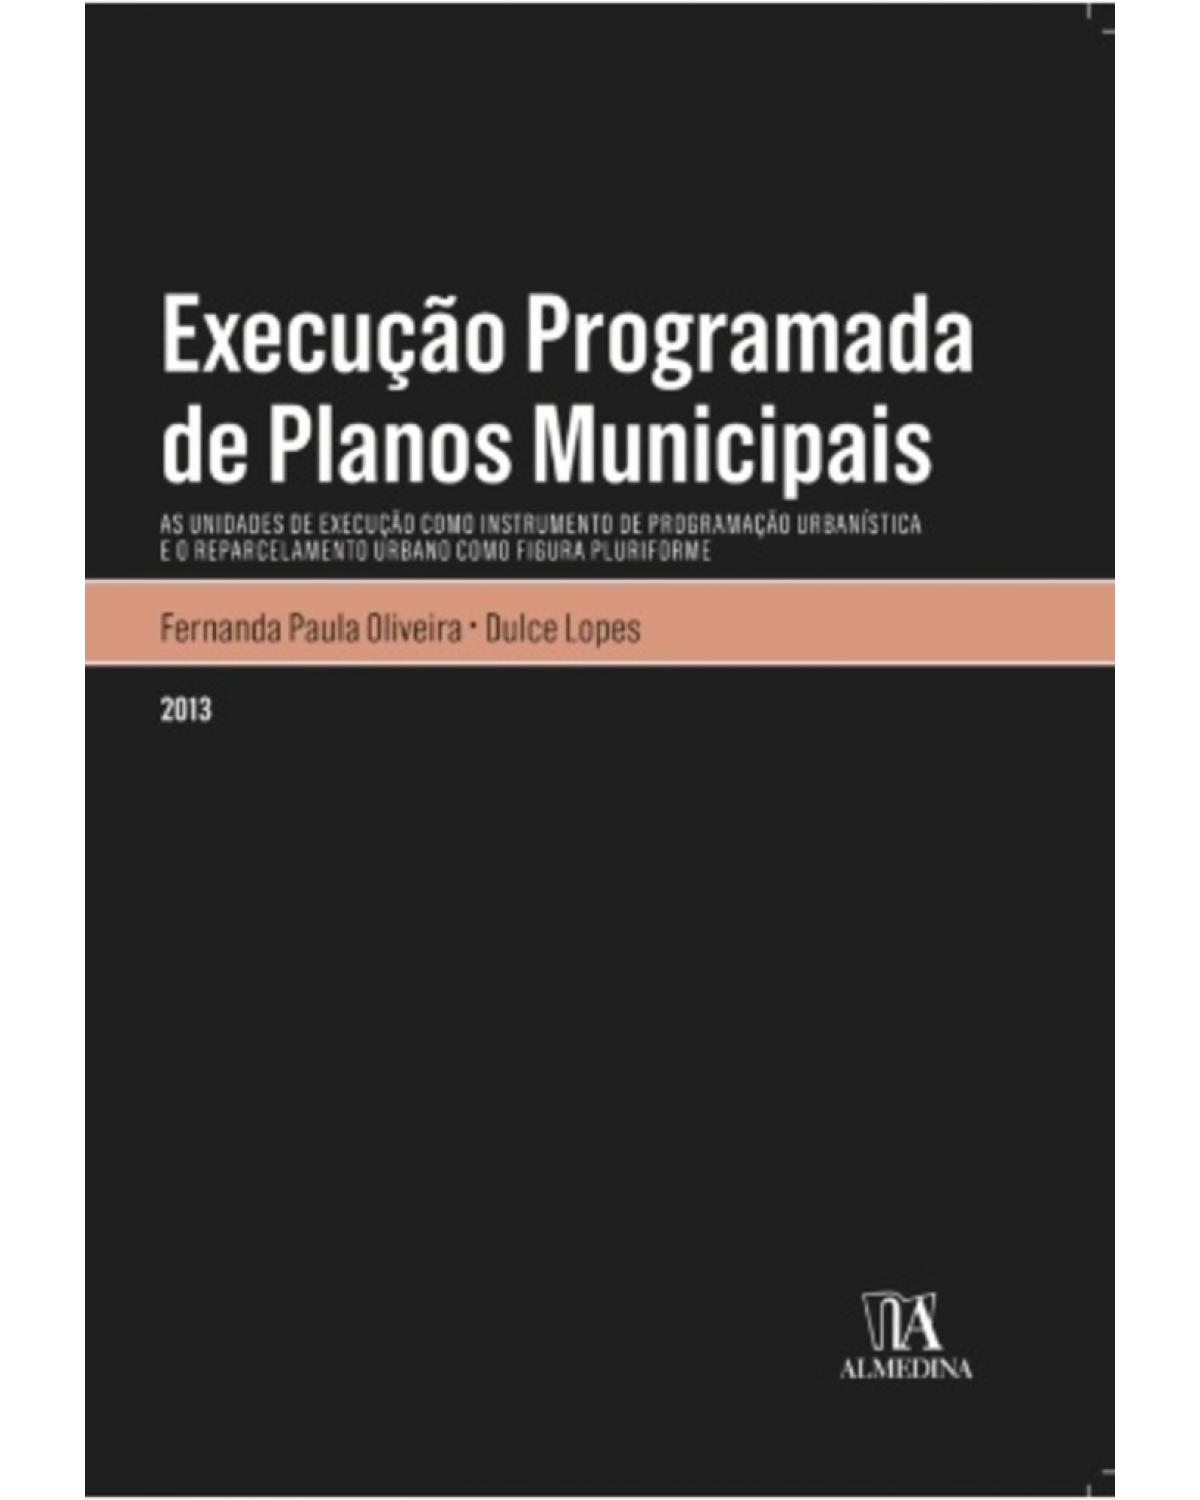 Execução programada de planos municipais - as unidades de execução como instrumento de programação urbanística e o reparcelamento urbano como figura plurifome - 1ª Edição | 2013